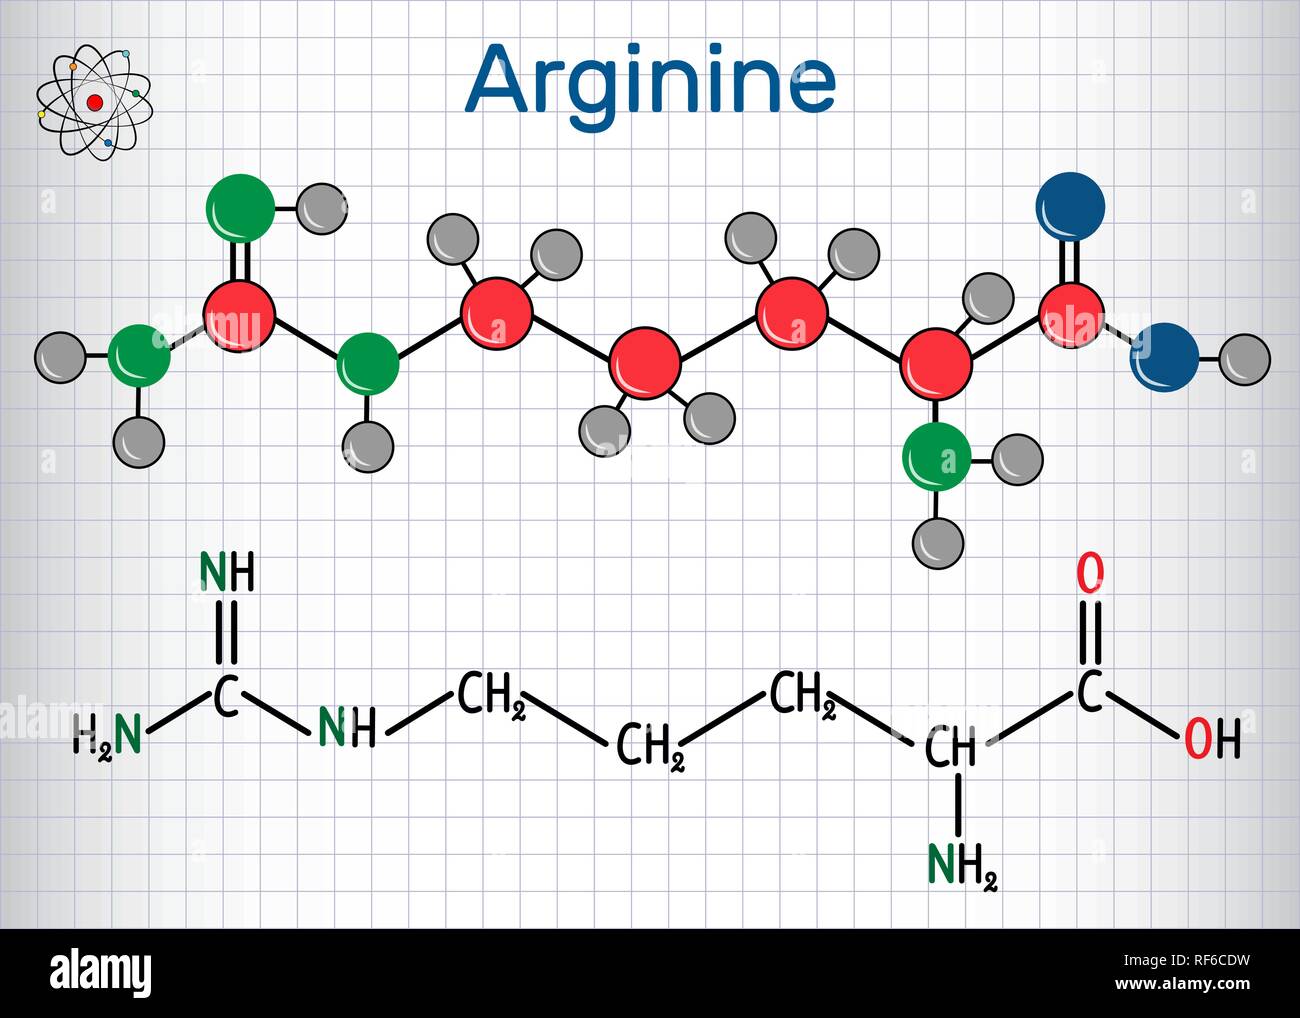 Arginine Molecular Imagenes De Stock Arginine Molecular Fotos De